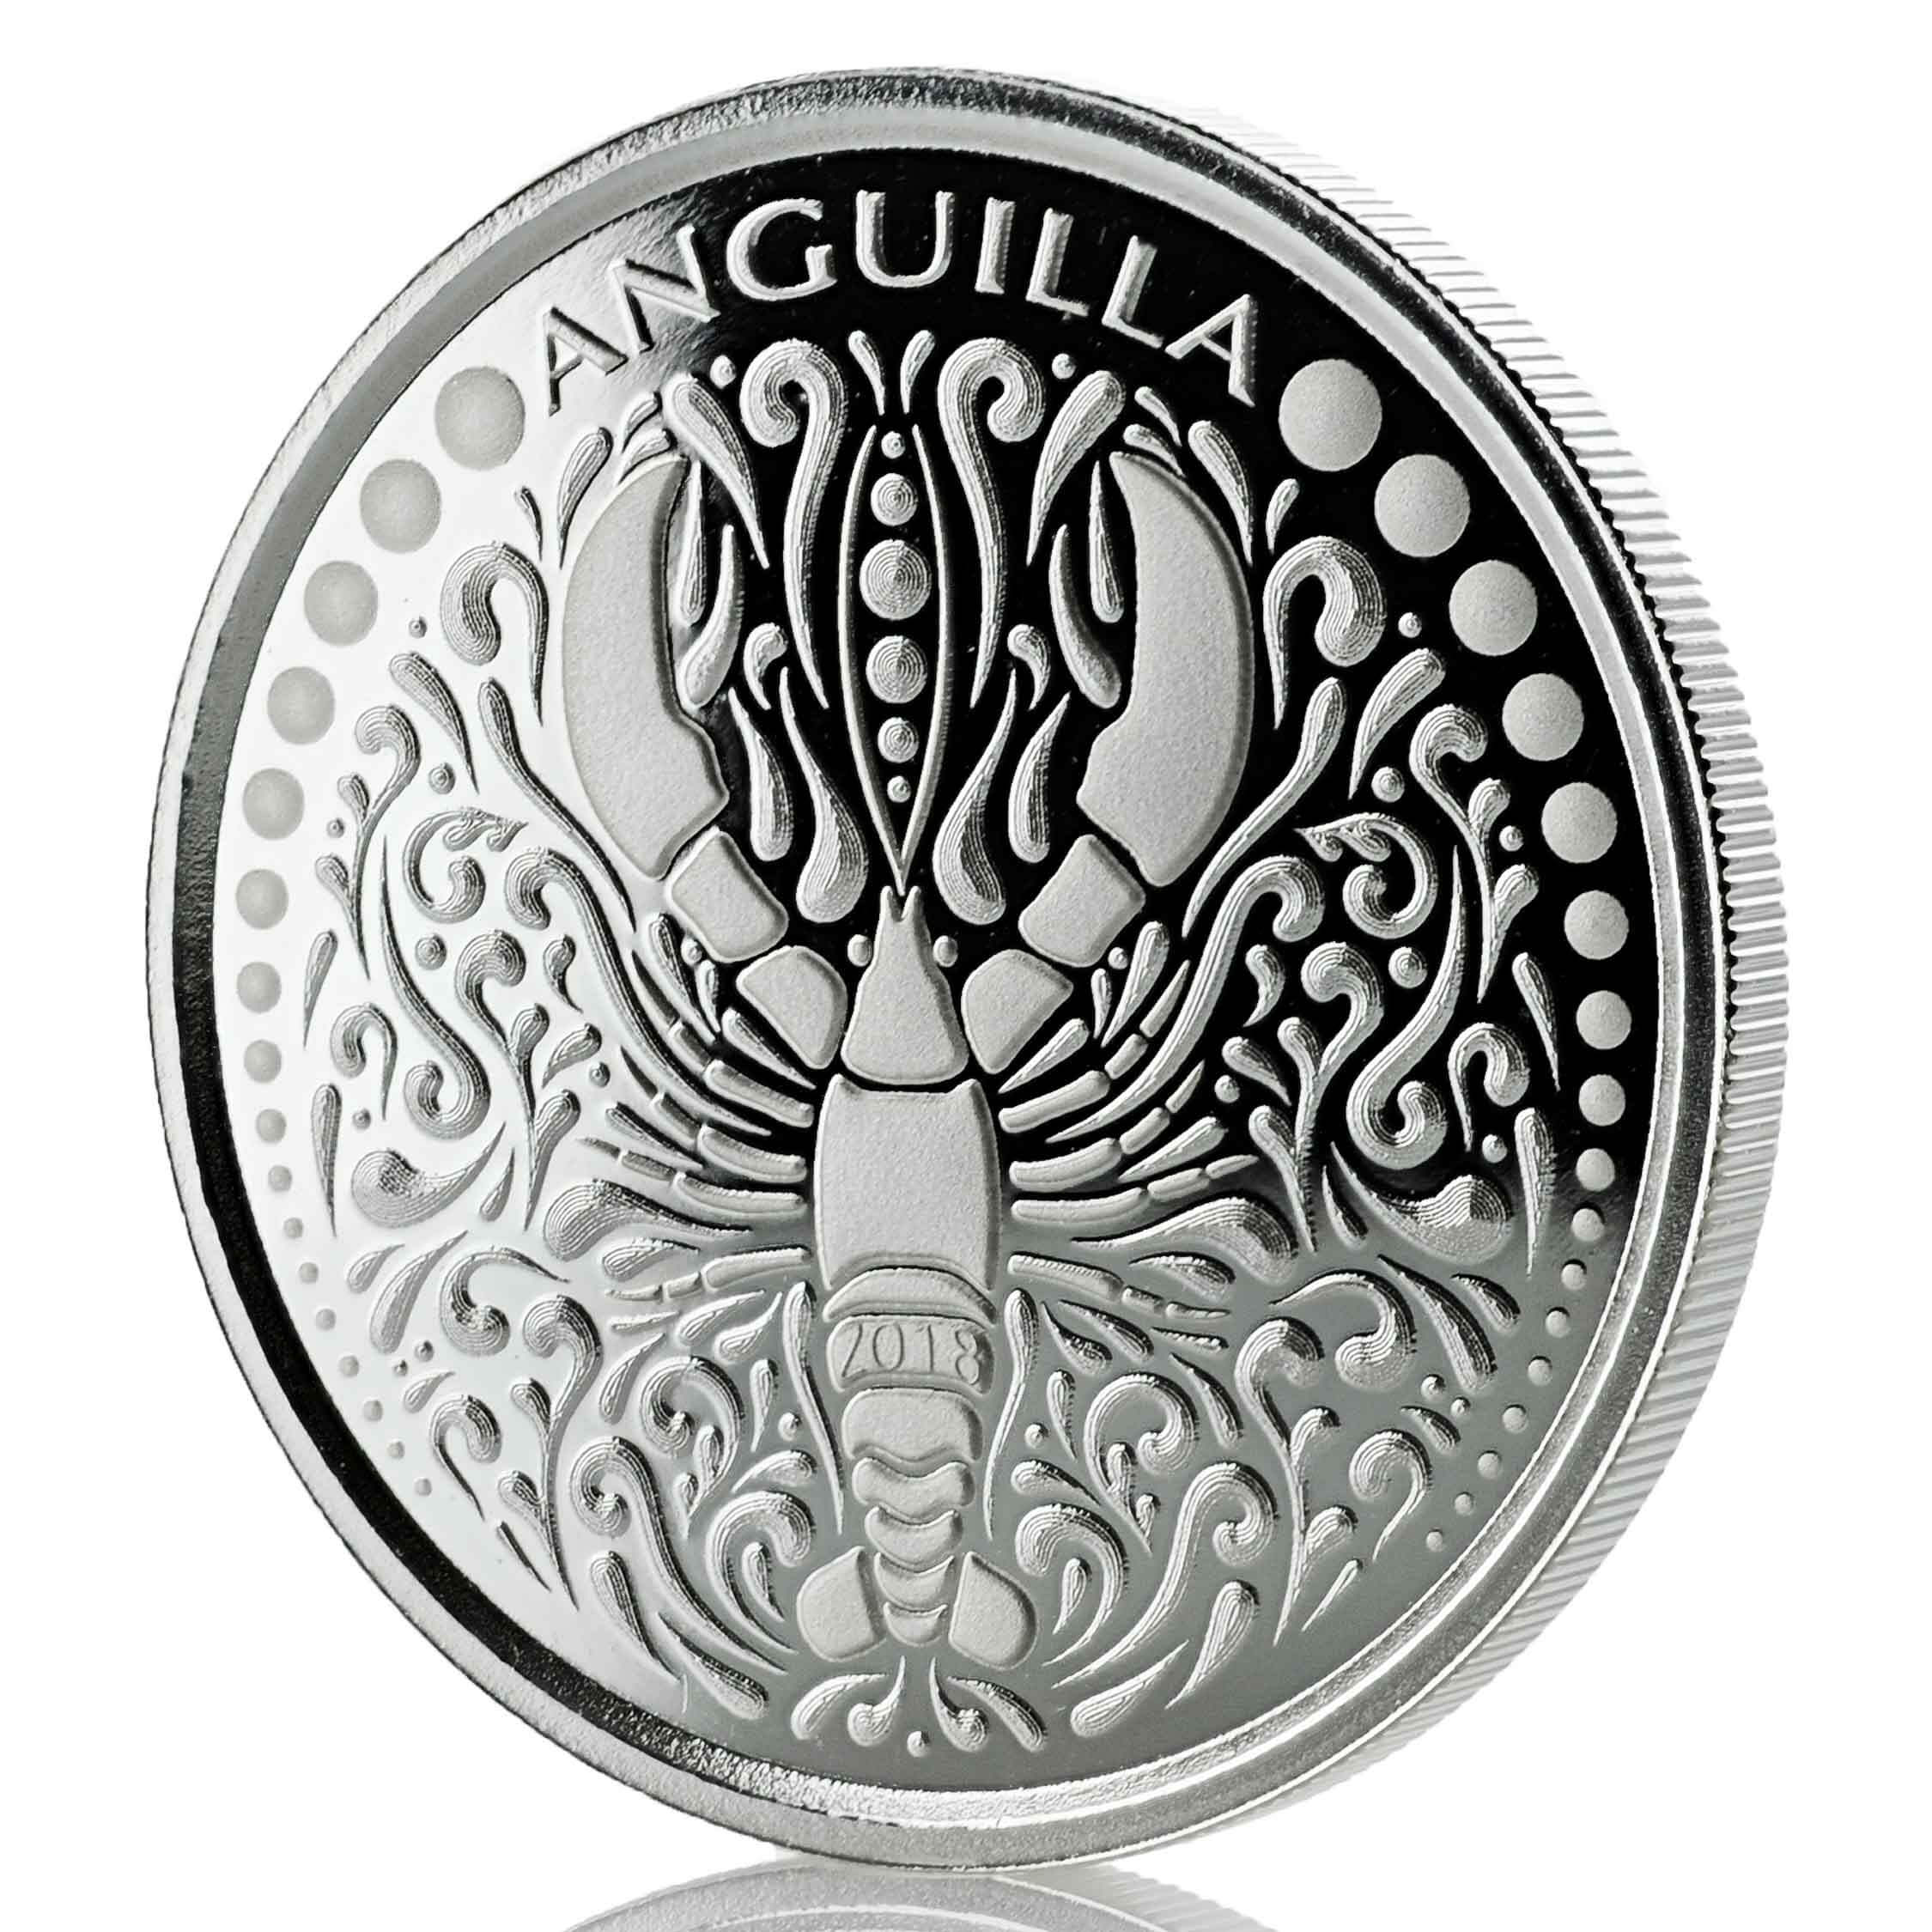 2018 EC8 Anguilla 1 oz Silver Coin